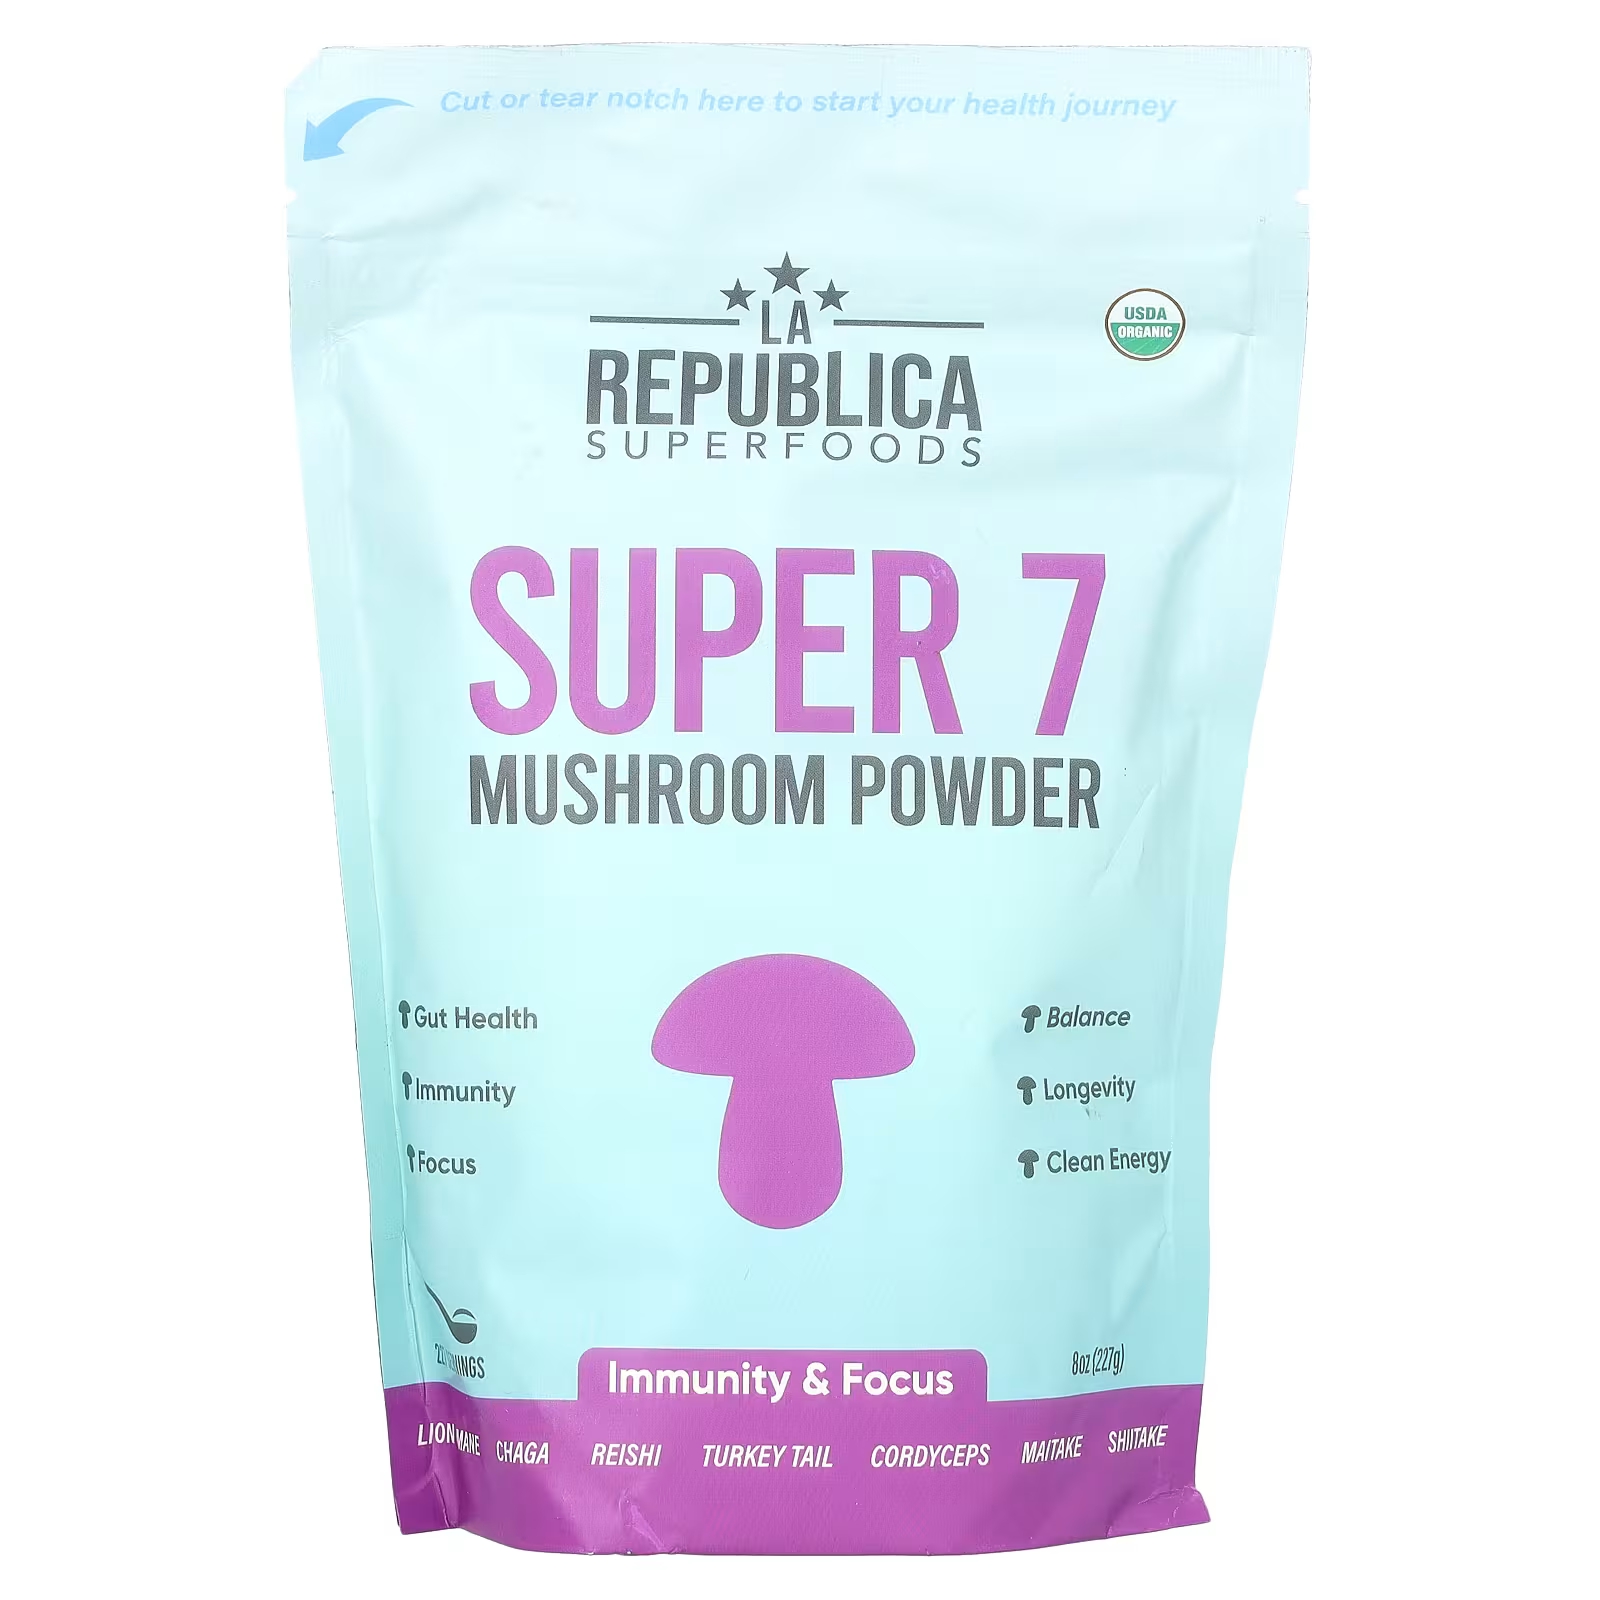 Грибной порошок LA Republica Super, 227 г грибной порошок la republica super 7 3 унции 85 г